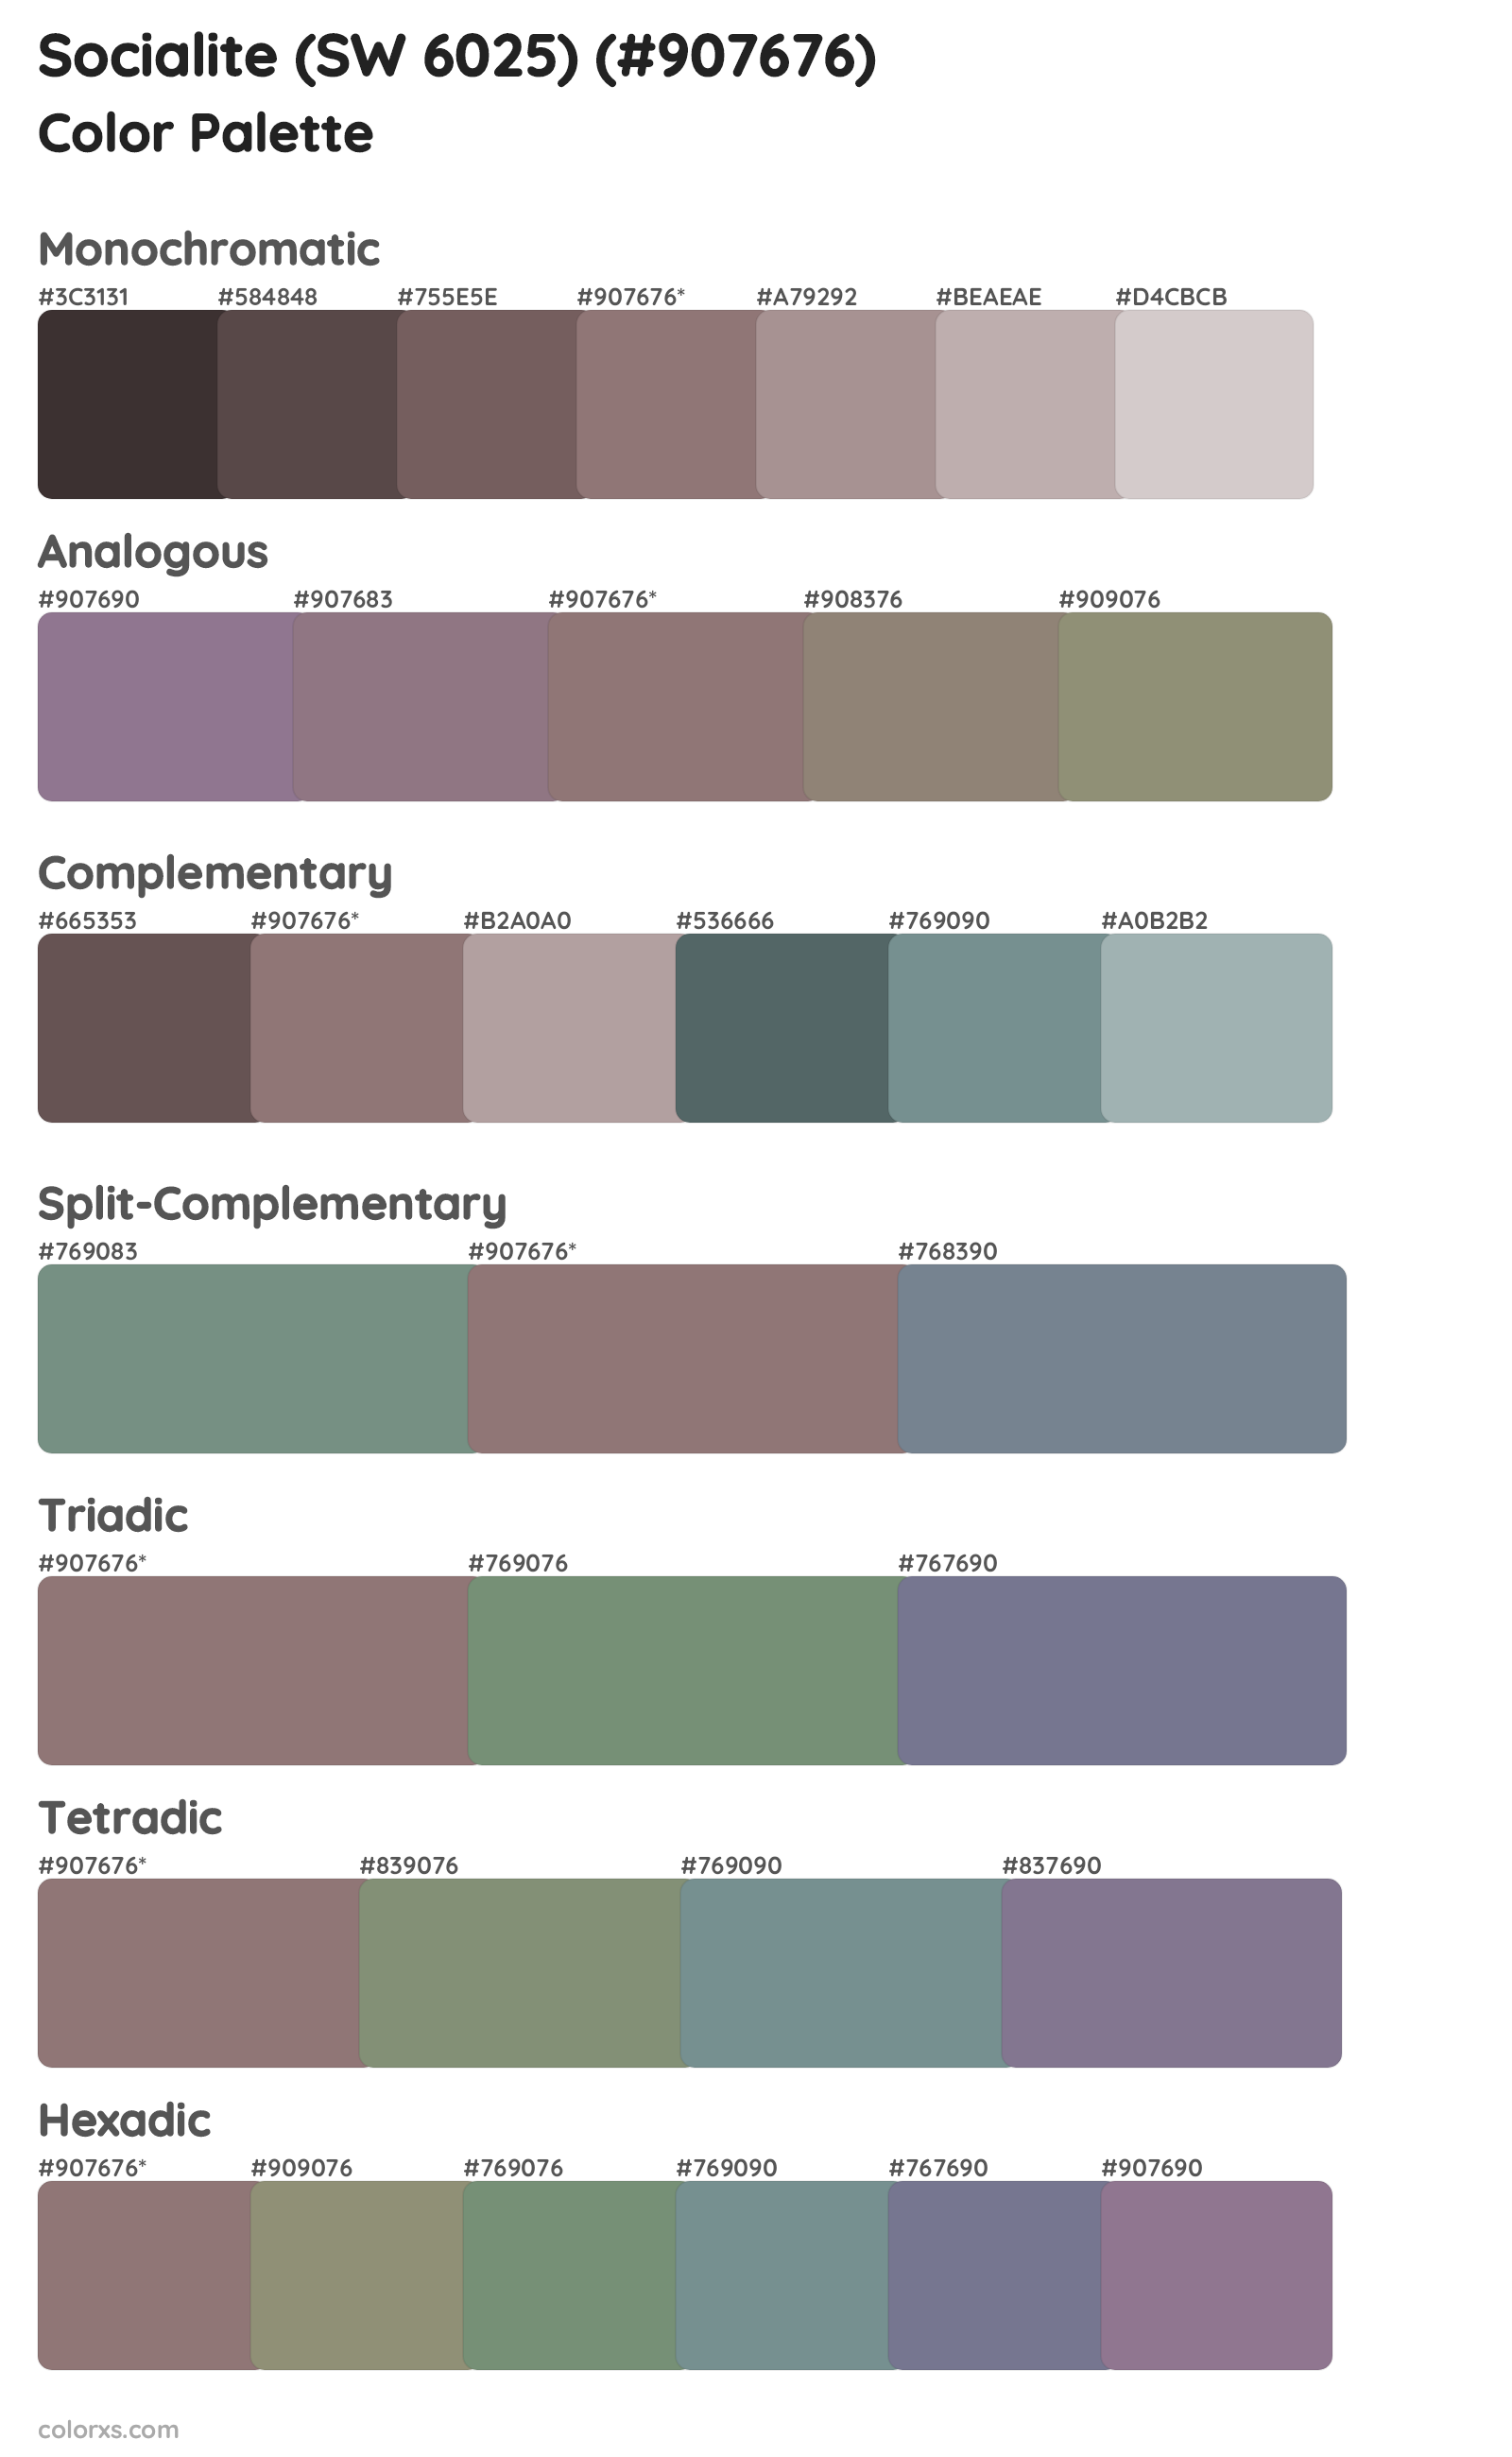 Socialite (SW 6025) Color Scheme Palettes